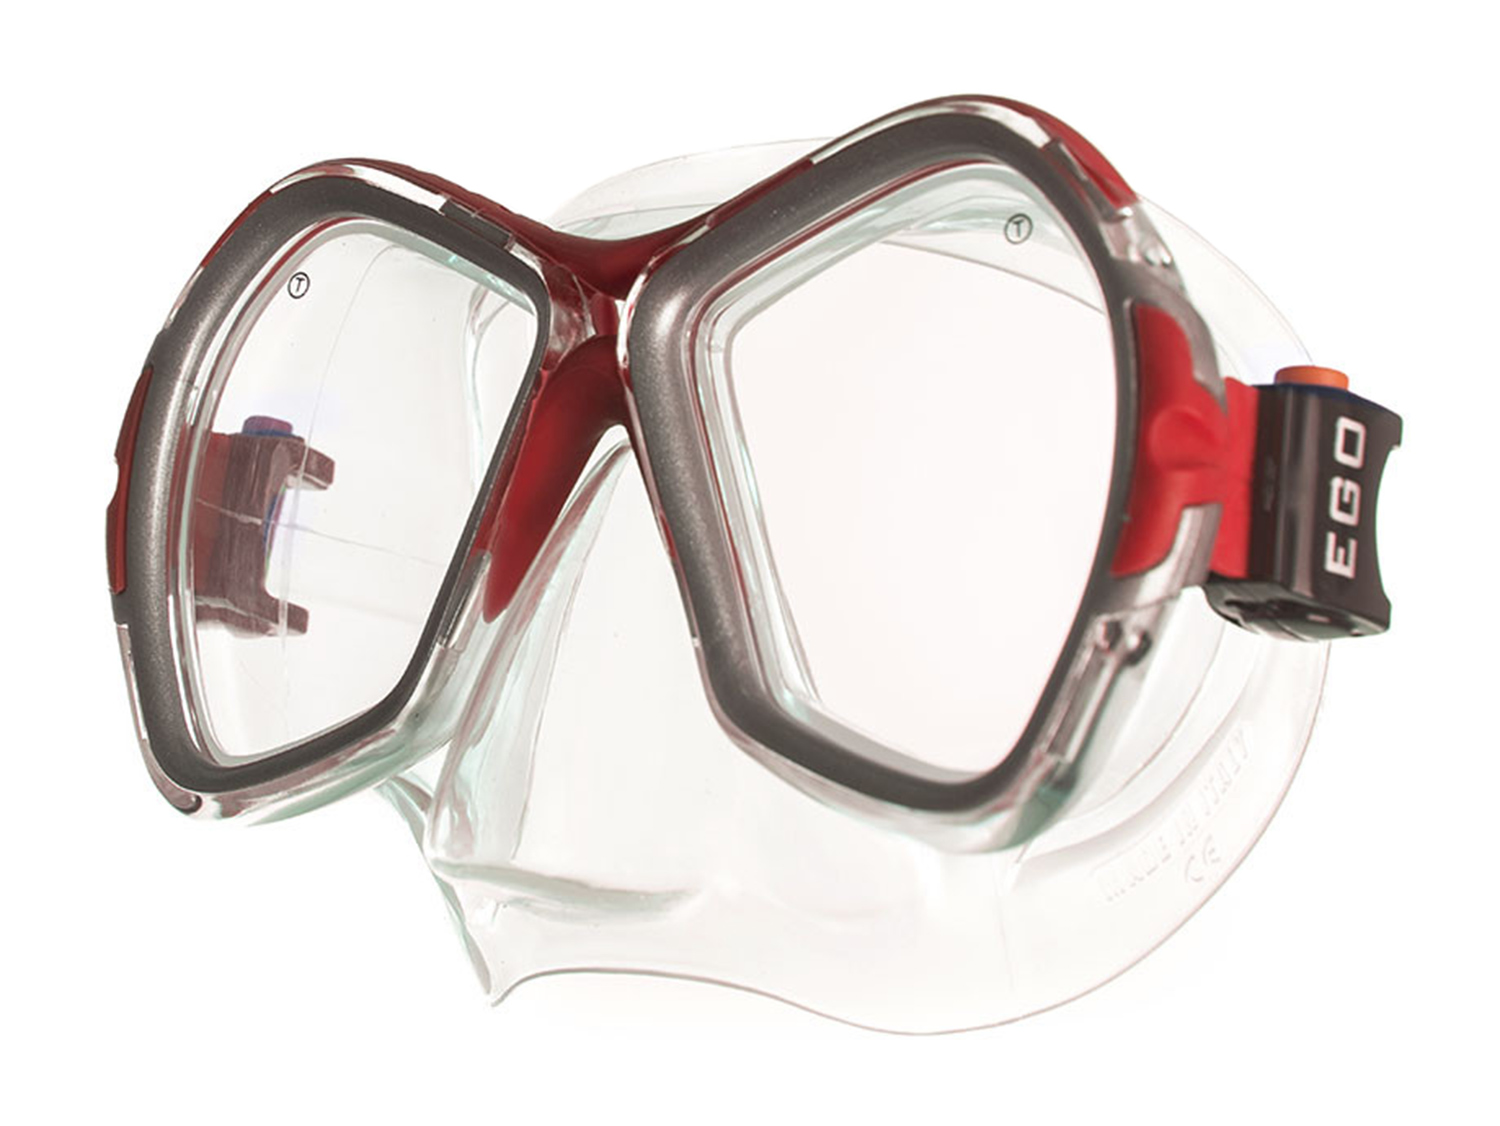 Маска для плавания Salvas Phoenix Mask серебристая/красная - купить в Москве, цены на Мегамаркет | 100028986878